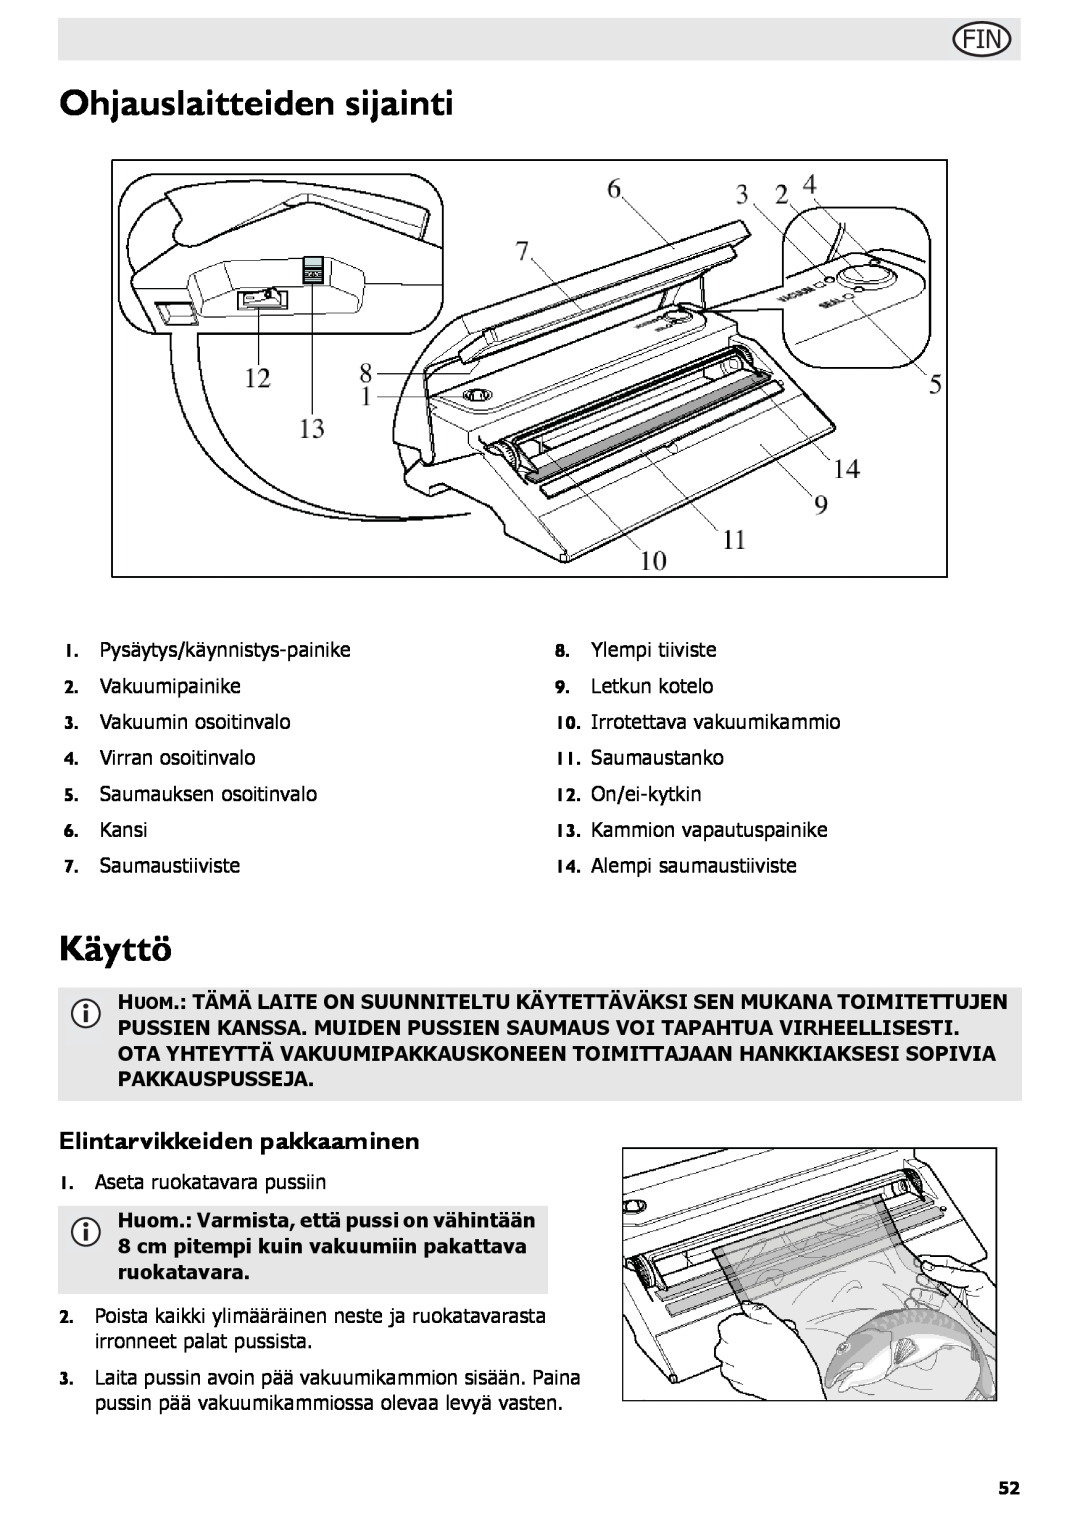 Buffalo Tools S097 instruction manual Ohjauslaitteiden sijainti, Käyttö, Elintarvikkeiden pakkaaminen 